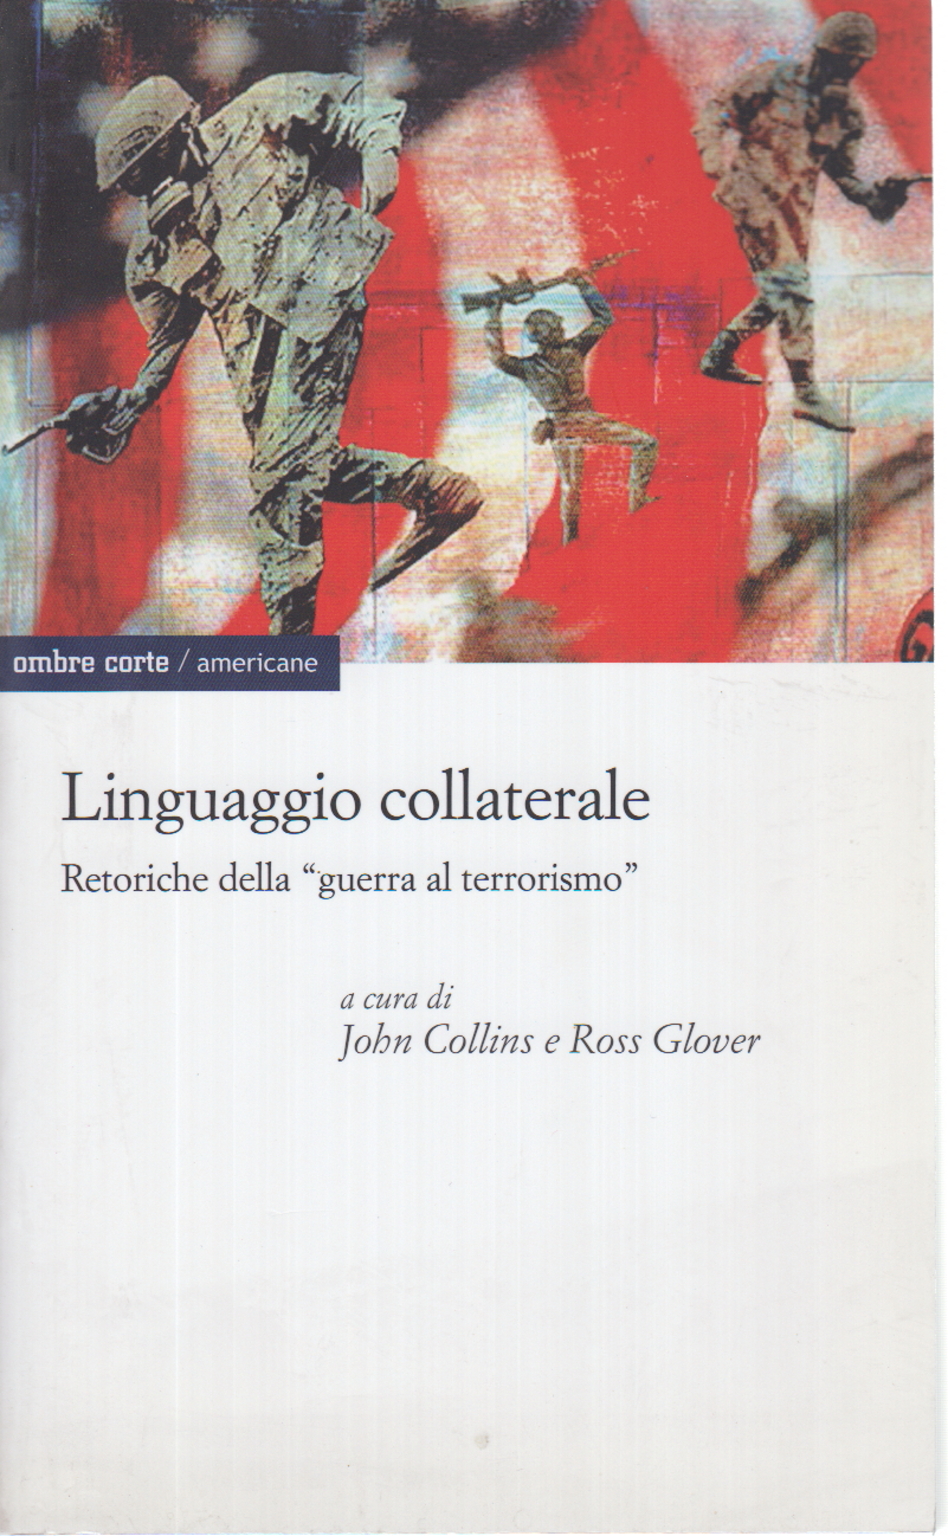 Linguaggio collaterale, John Collins Ross Glover